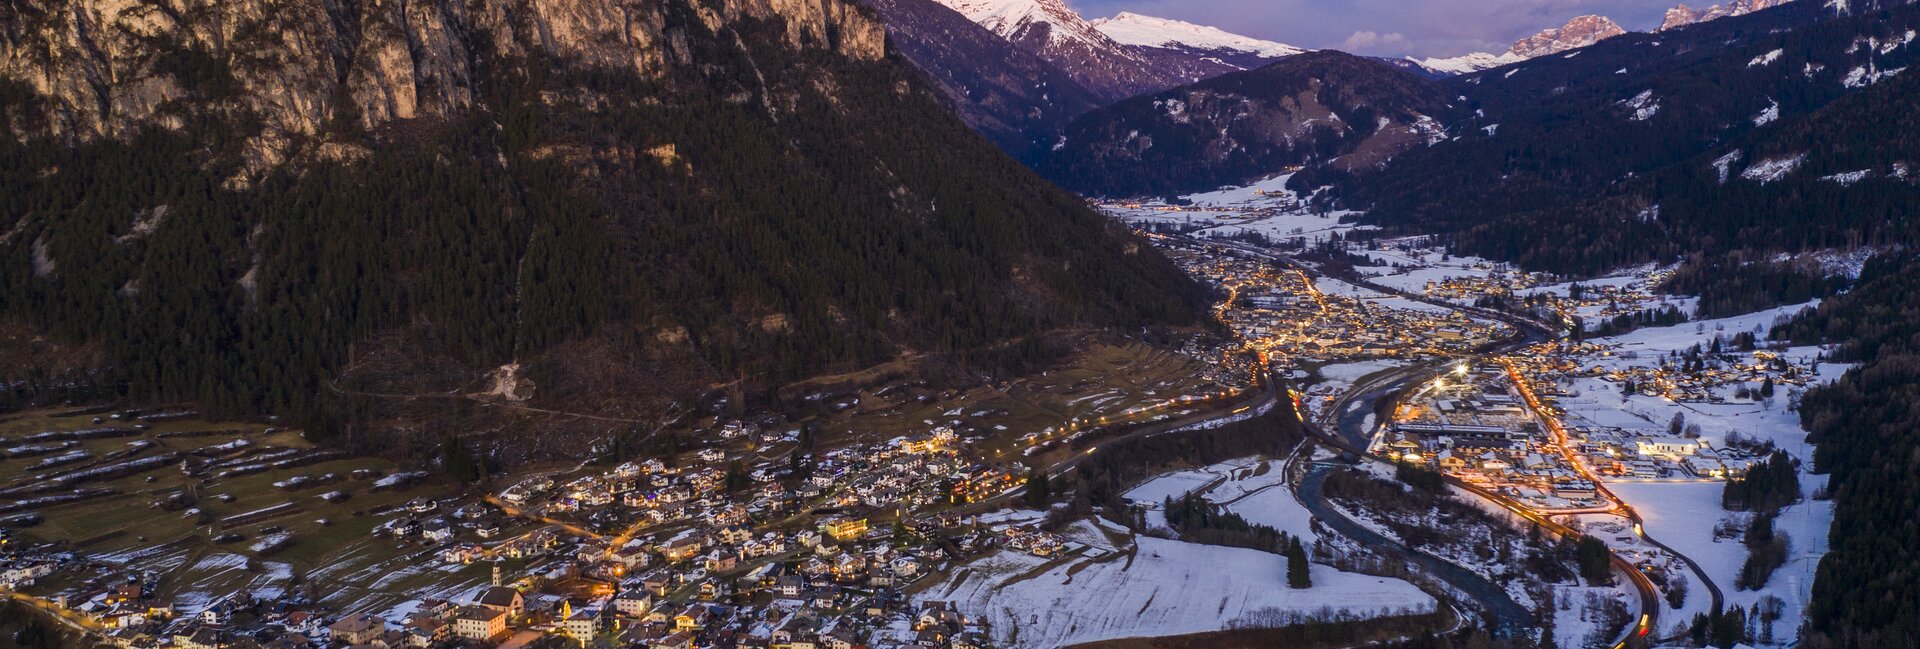 Centro Fondo Lago di Tesero | © Nordic-Ski-WM-Val-di-Fiemme-CO-Fiemme-Ski-World-Cup